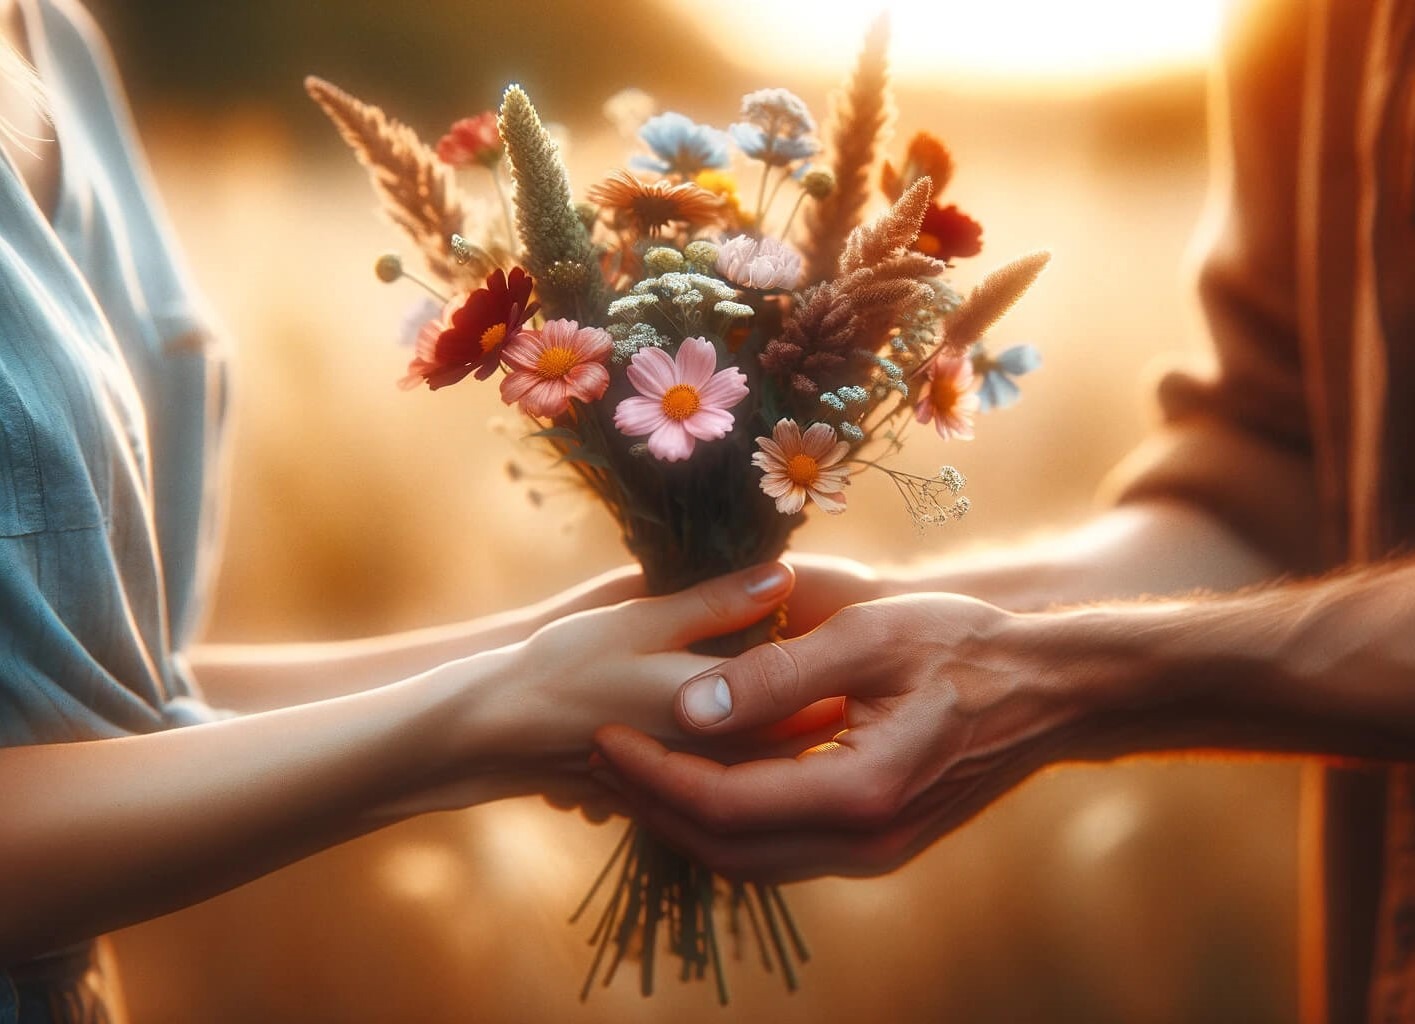 Bereit, Vertrauen zu pflanzen: Ein Blumenstrauß als Symbol für den Beginn einer Reise des Vertrauens und der Verbundenheit. Jede Blume repräsentiert eine Chance für Wachstum und Blüte in unseren Beziehungen. Ein Akt der Zuneigung und Hoffnung, der die Grundlage für tiefe Verbindungen legt.